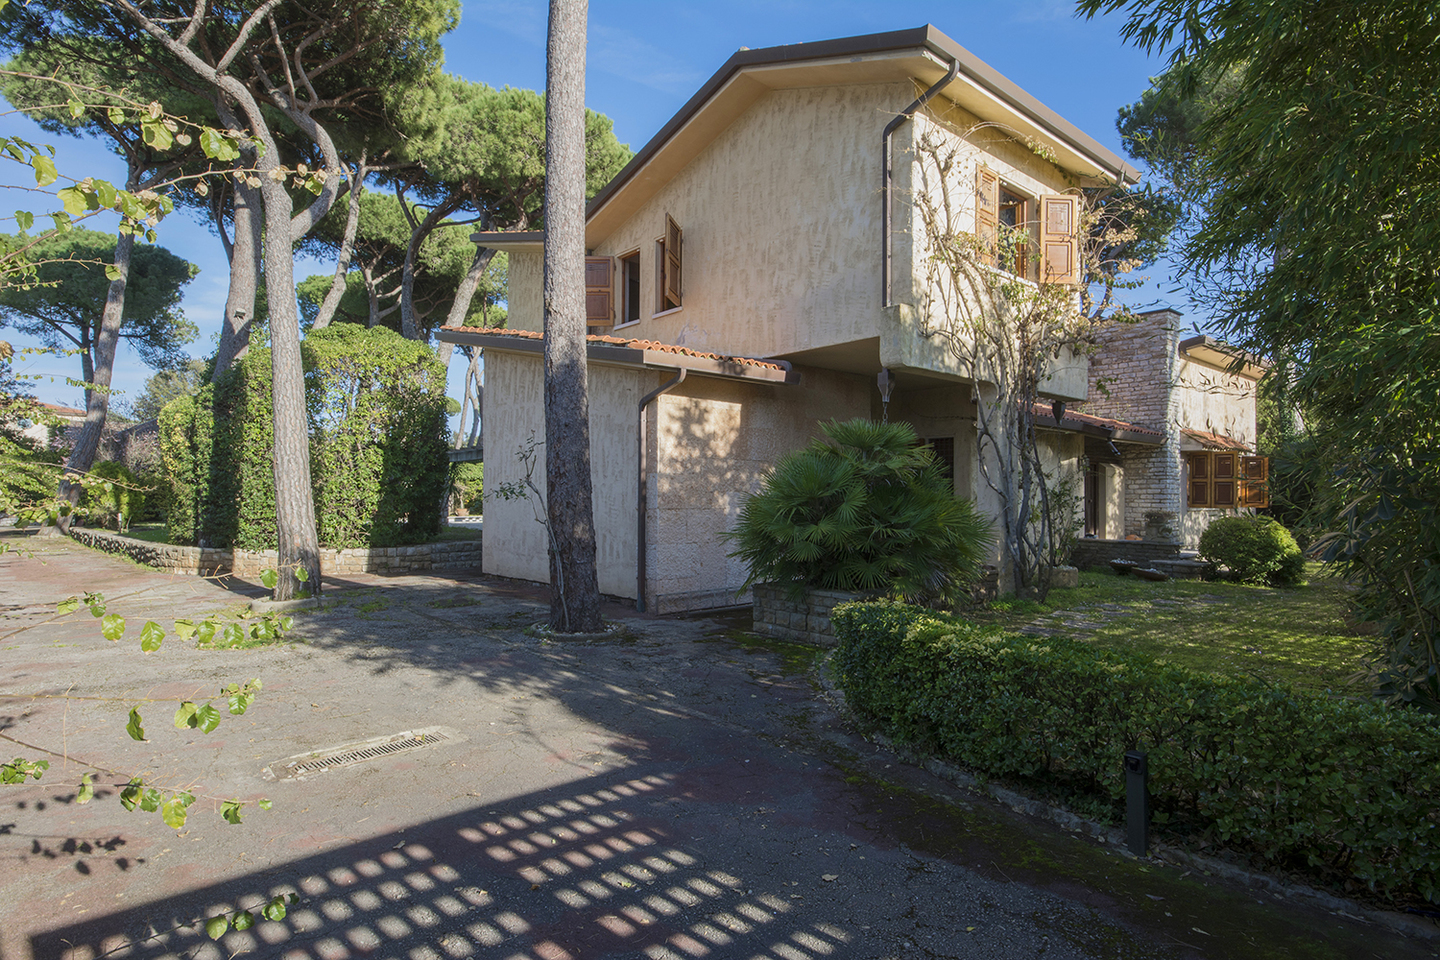 For Sale: Villa Serena On The Tuscan Coast Of Versilia, Forte dei Marmi ...